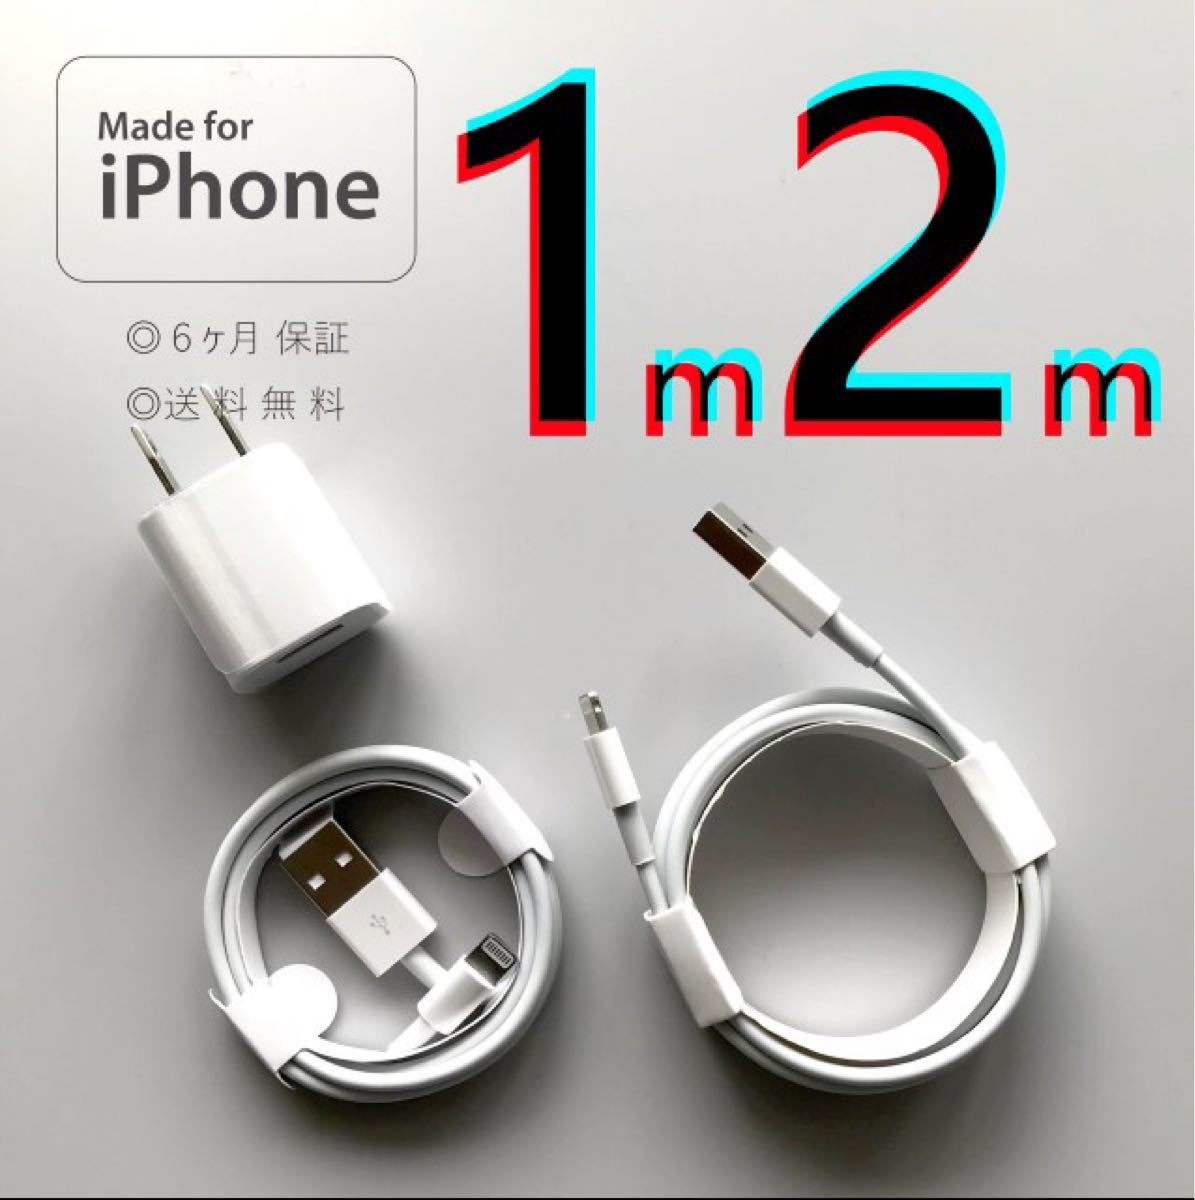 iPhone アダプタ コンセント 充電器 充電ケーブル コード lightning cable ライトニングケーブル 電源